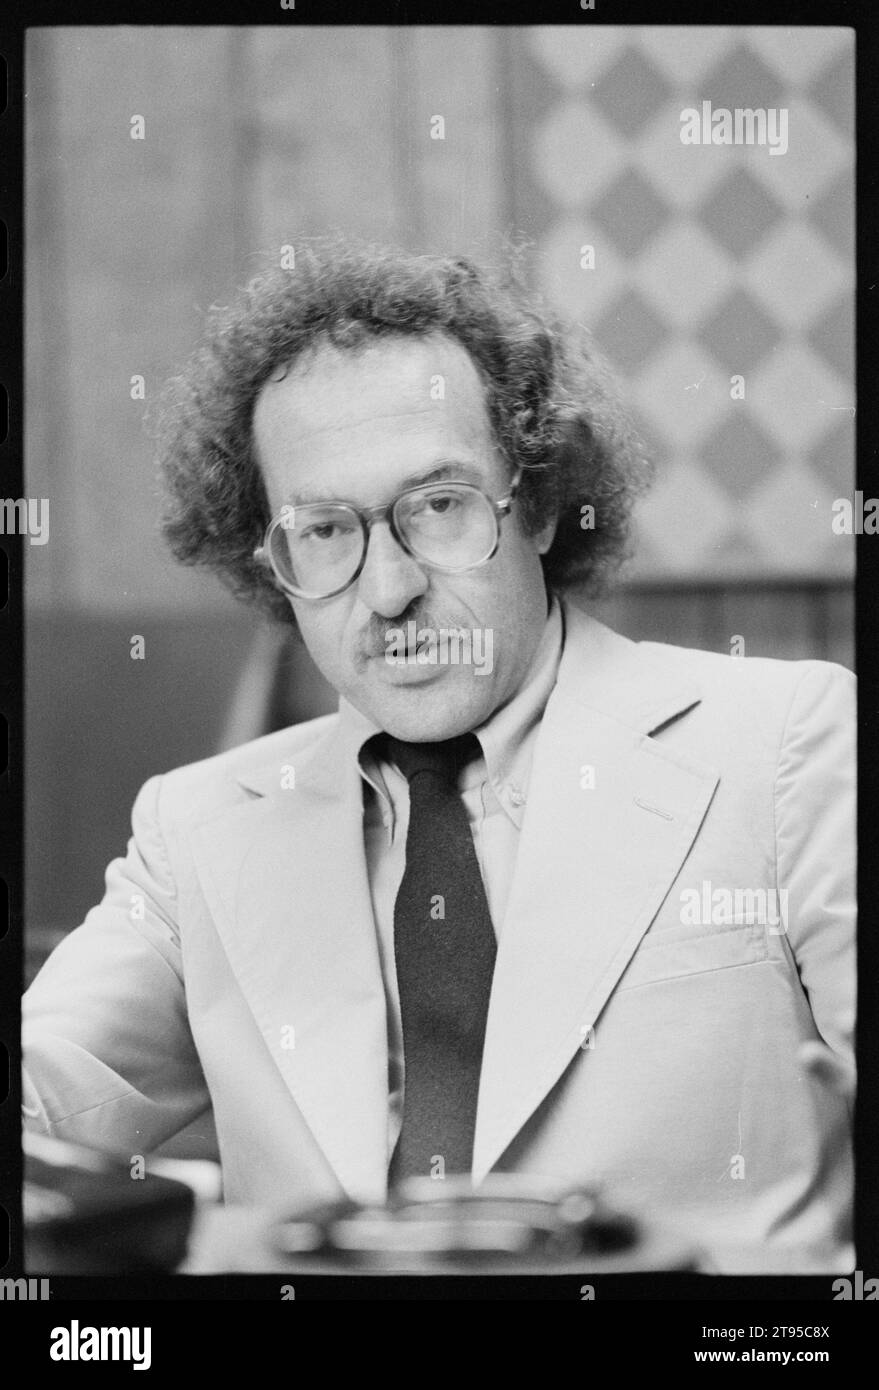 Abogado Alan Dershowitz (1938- ) durante una entrevista, Washington, Distrito de Columbia, 22/6/1982. (Foto de Warren K Leffler/US News and World Report Magazine Collection. Foto de stock